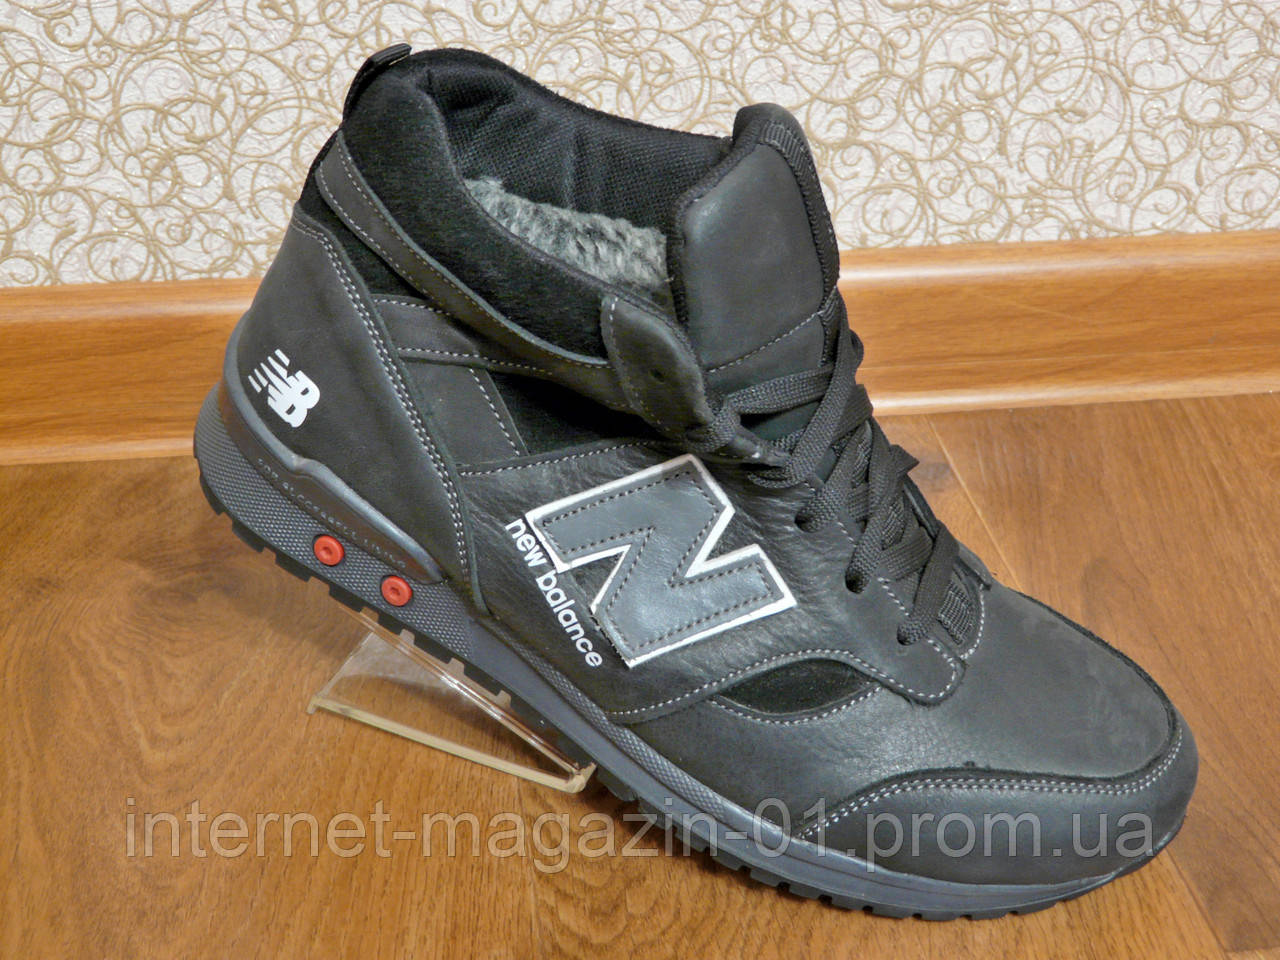 Зимові чоловічі шкіряні кросівки NB New Balance, фото 1